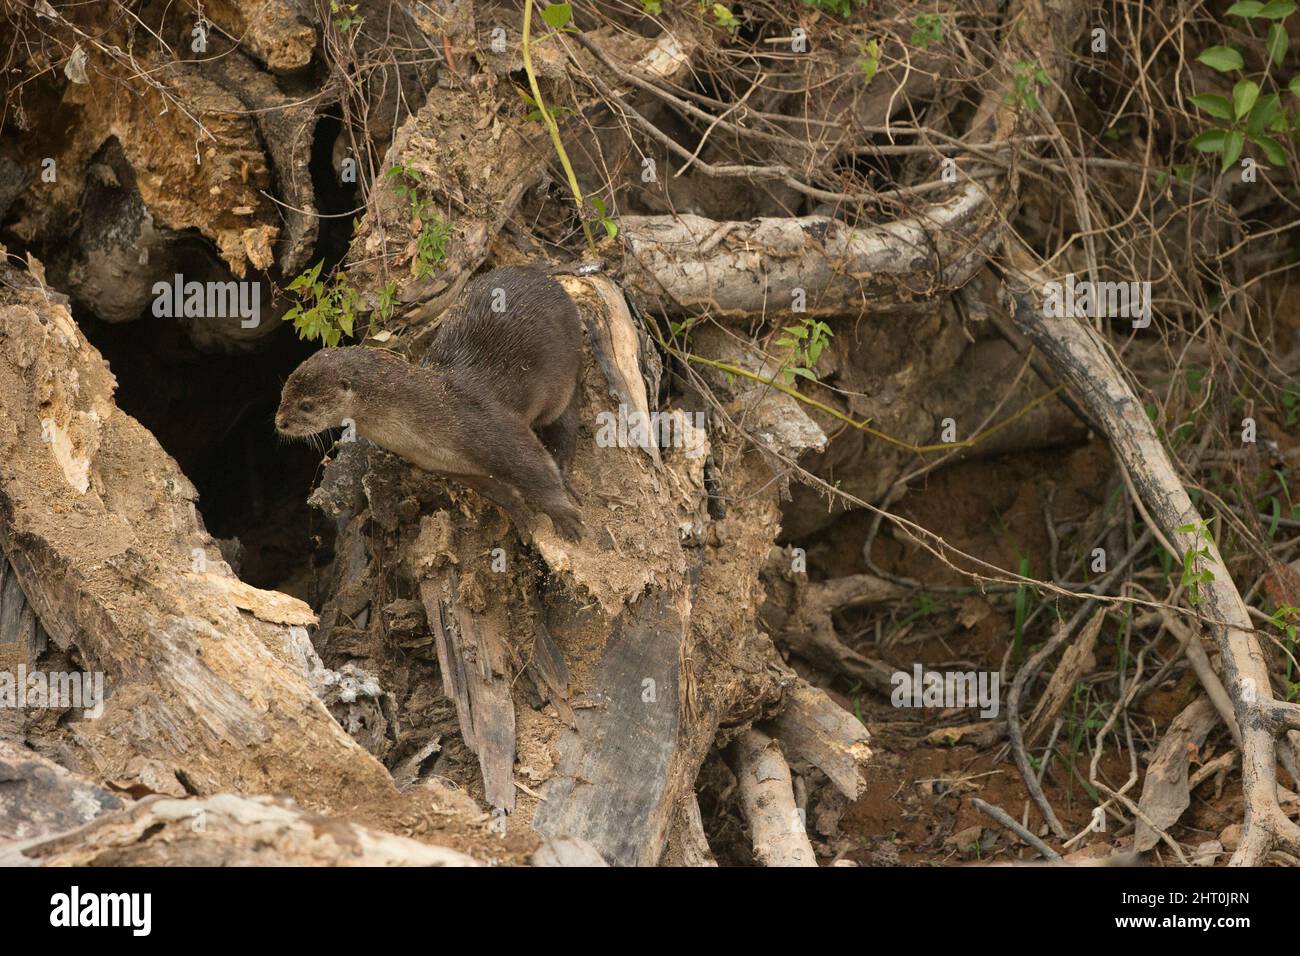 Lotier néotropical (Lontra longicaudis) parmi les racines d'un arbre tombé sur une rive de rivière. Pantanal, Mato Grosso, Brésil Banque D'Images